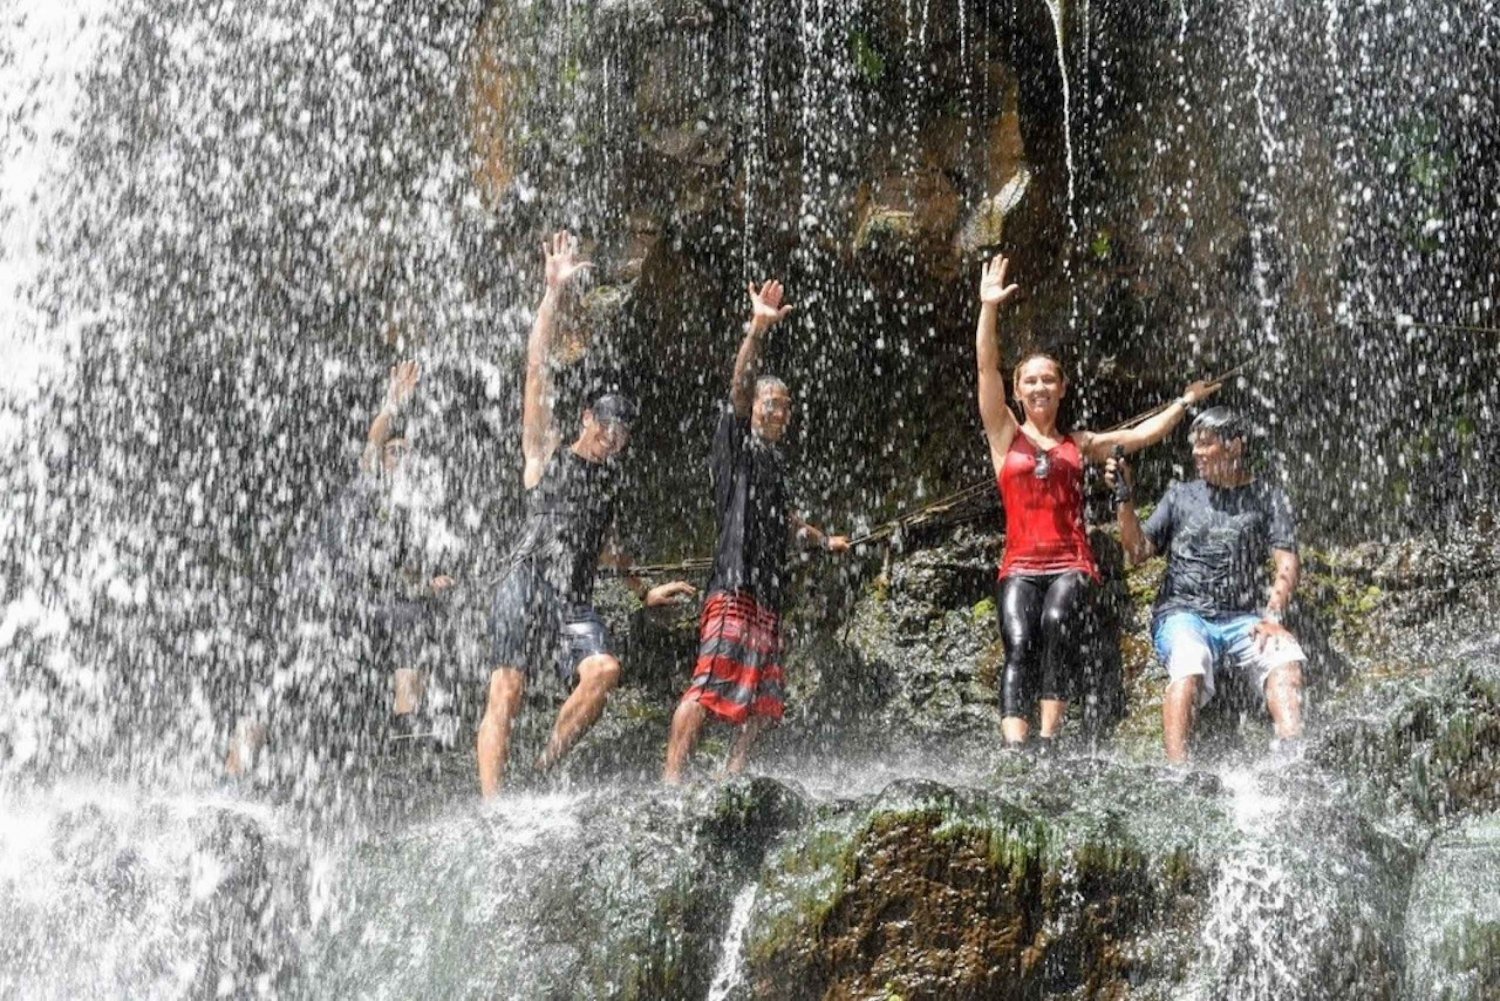 Kauai : Randonnée guidée et baignade dans une cascade